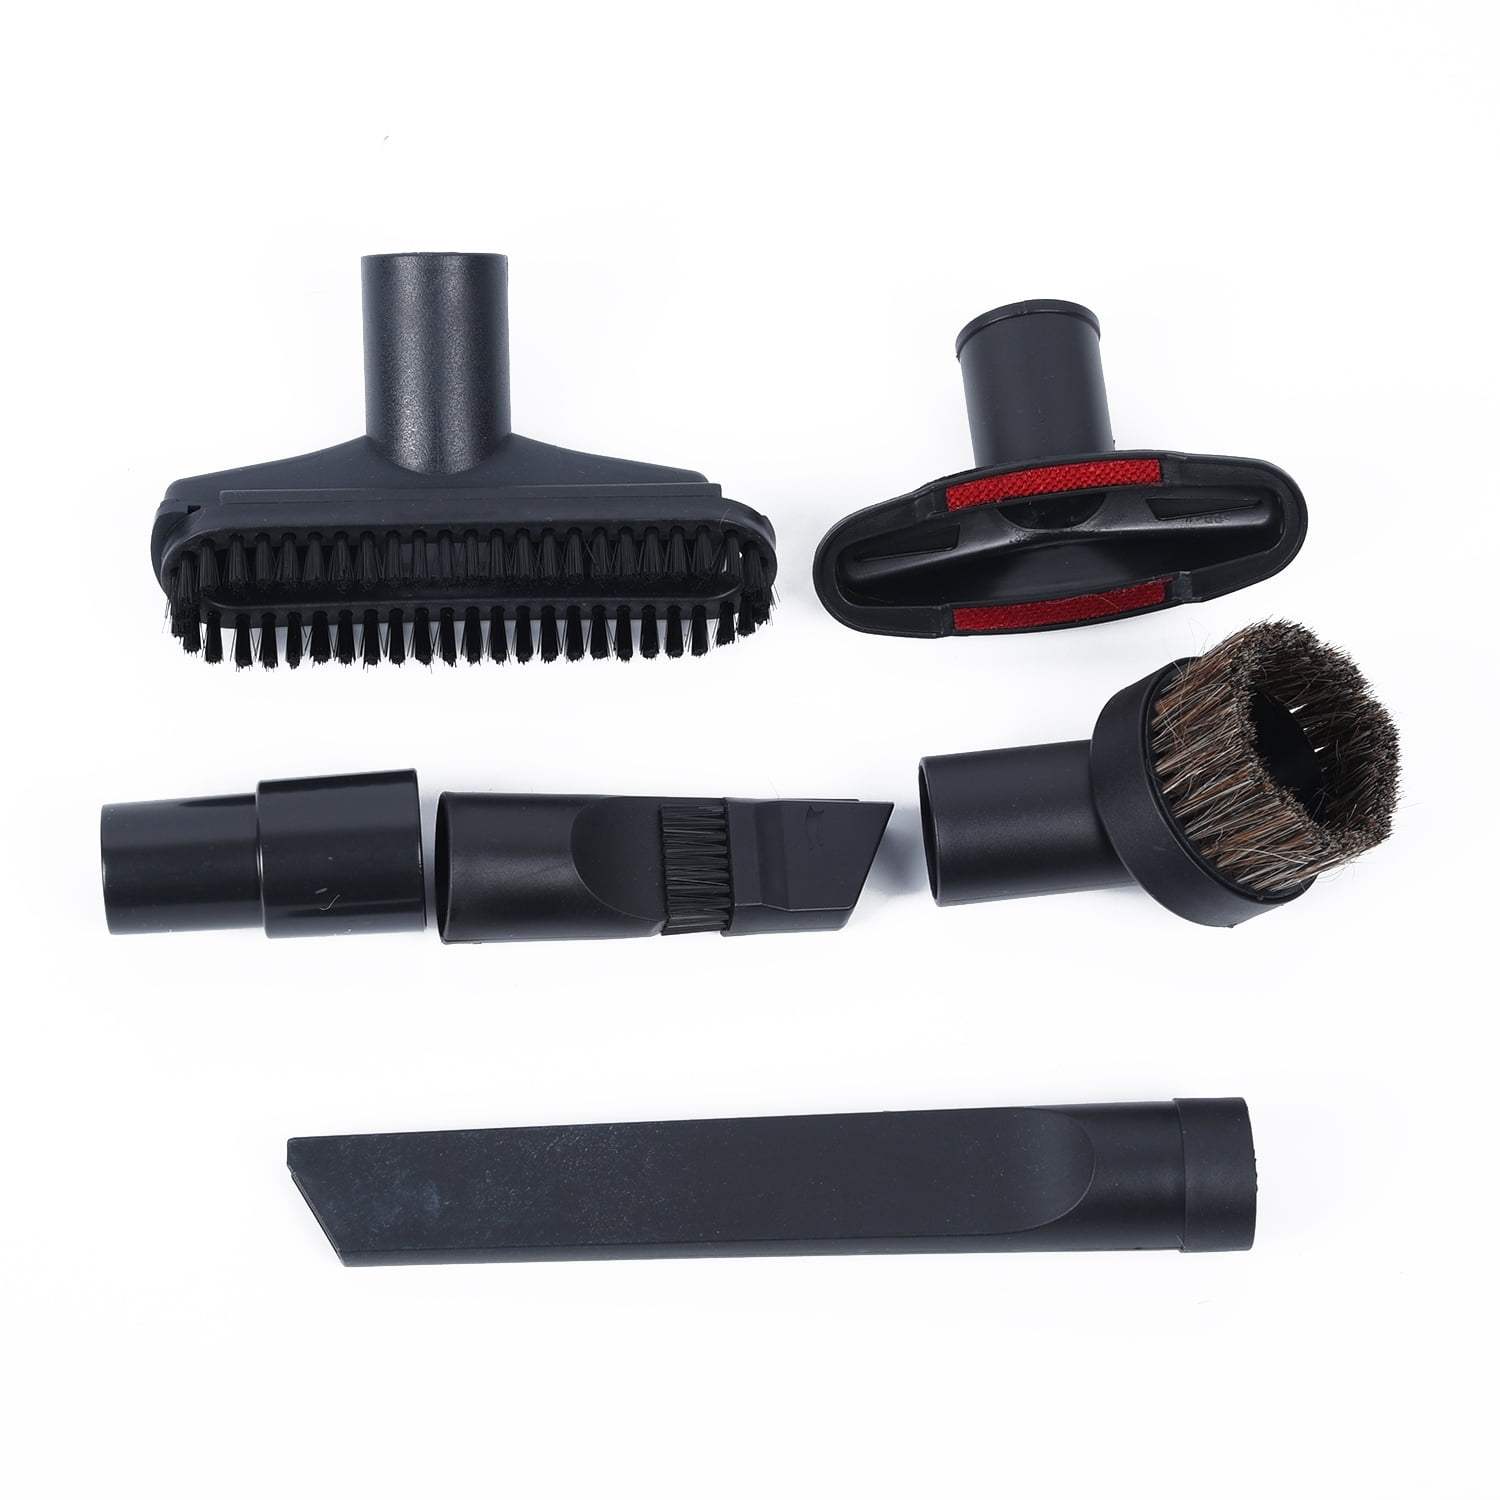 Details about   6pcs/Set Vacuum Attachments Accessories Wet Dry Cleaning Kit Brush Nozzle 